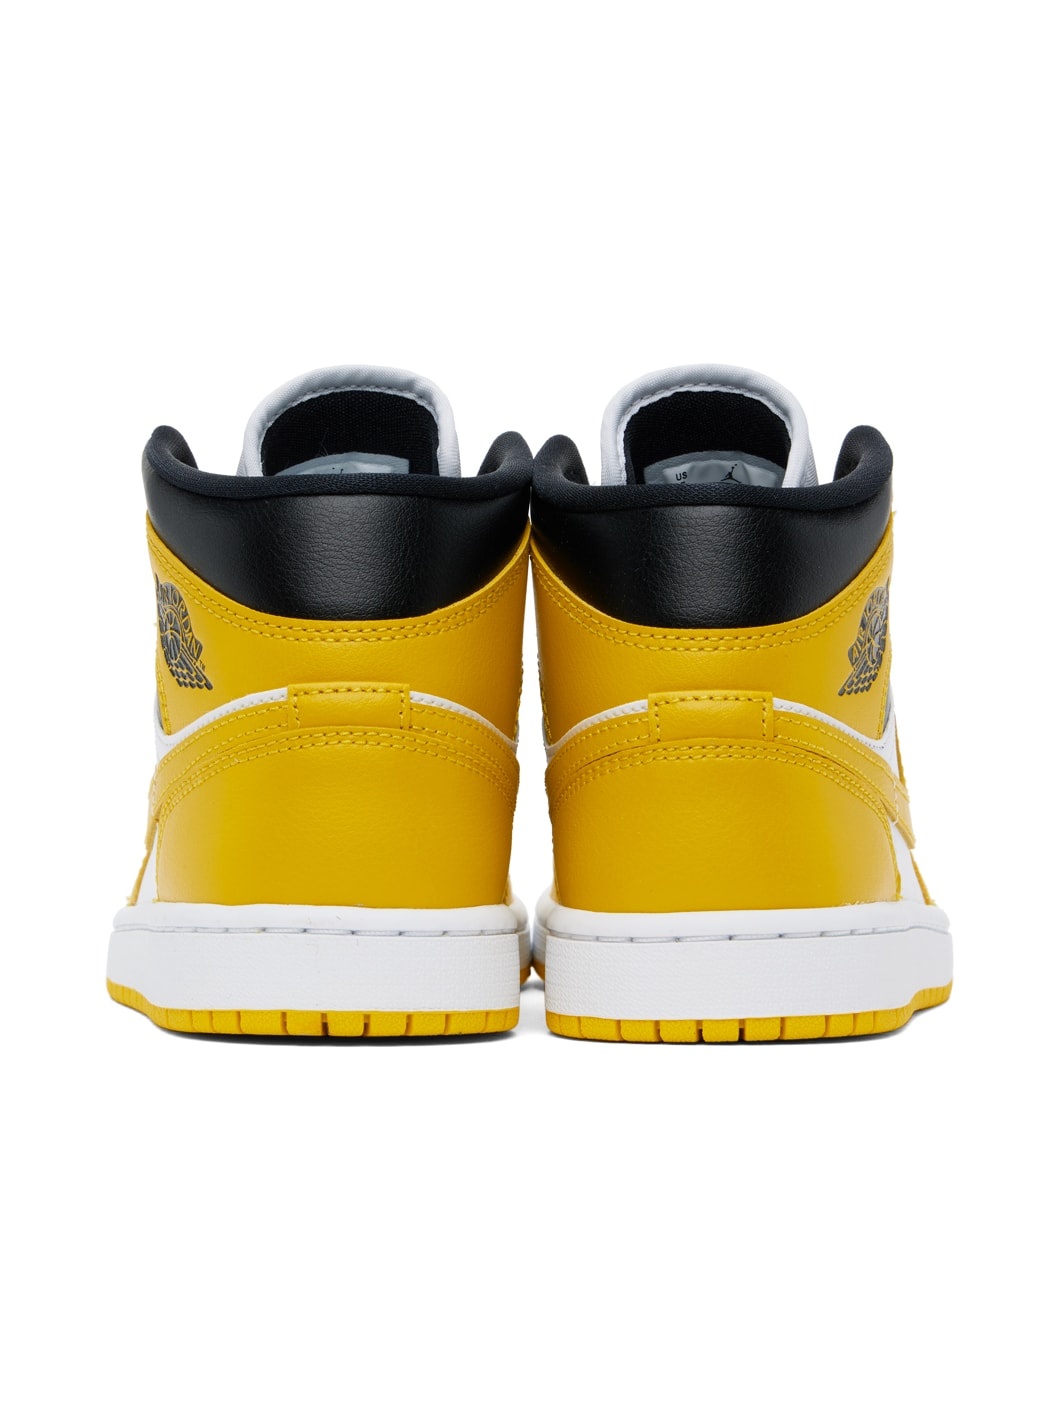 White & Yellow Air Jordan 1 Mid Sneakers - 2